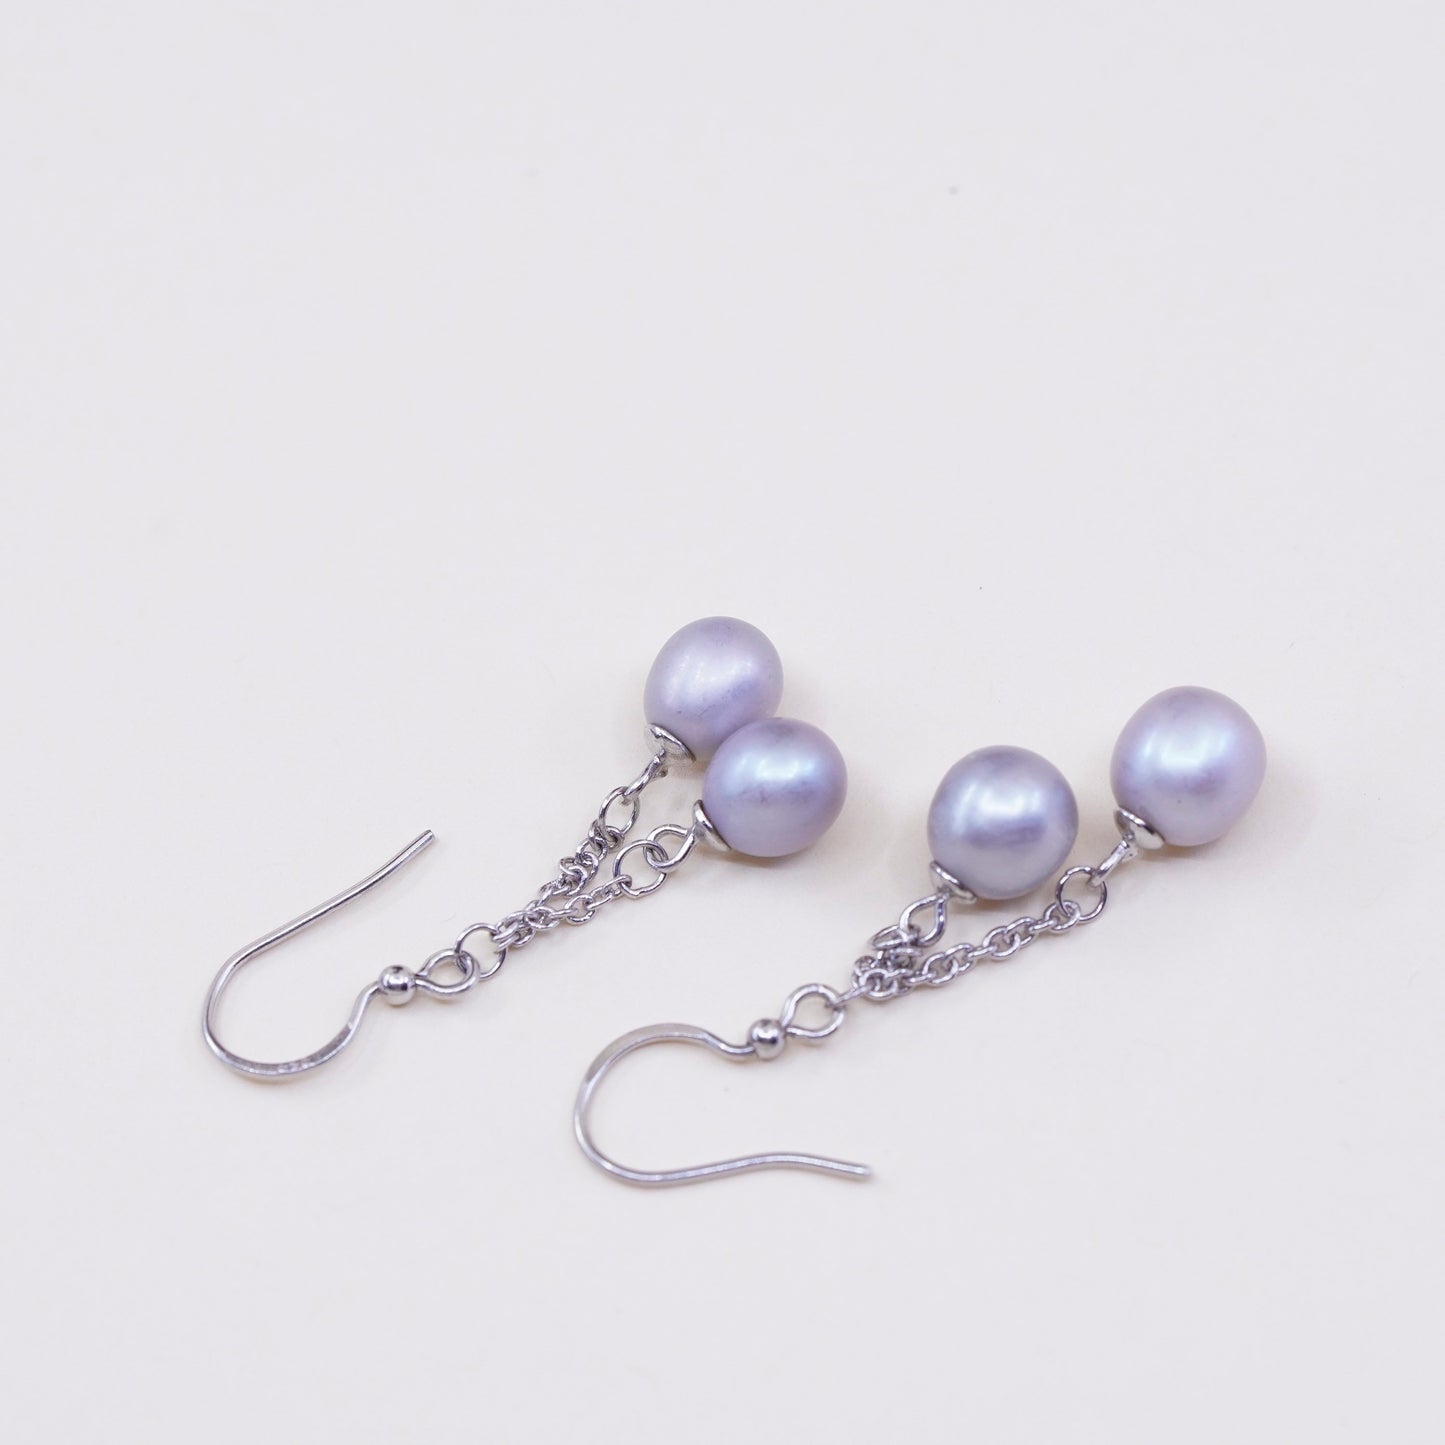 Vintage sterling 925 silver handmade earrings with pearl dangles